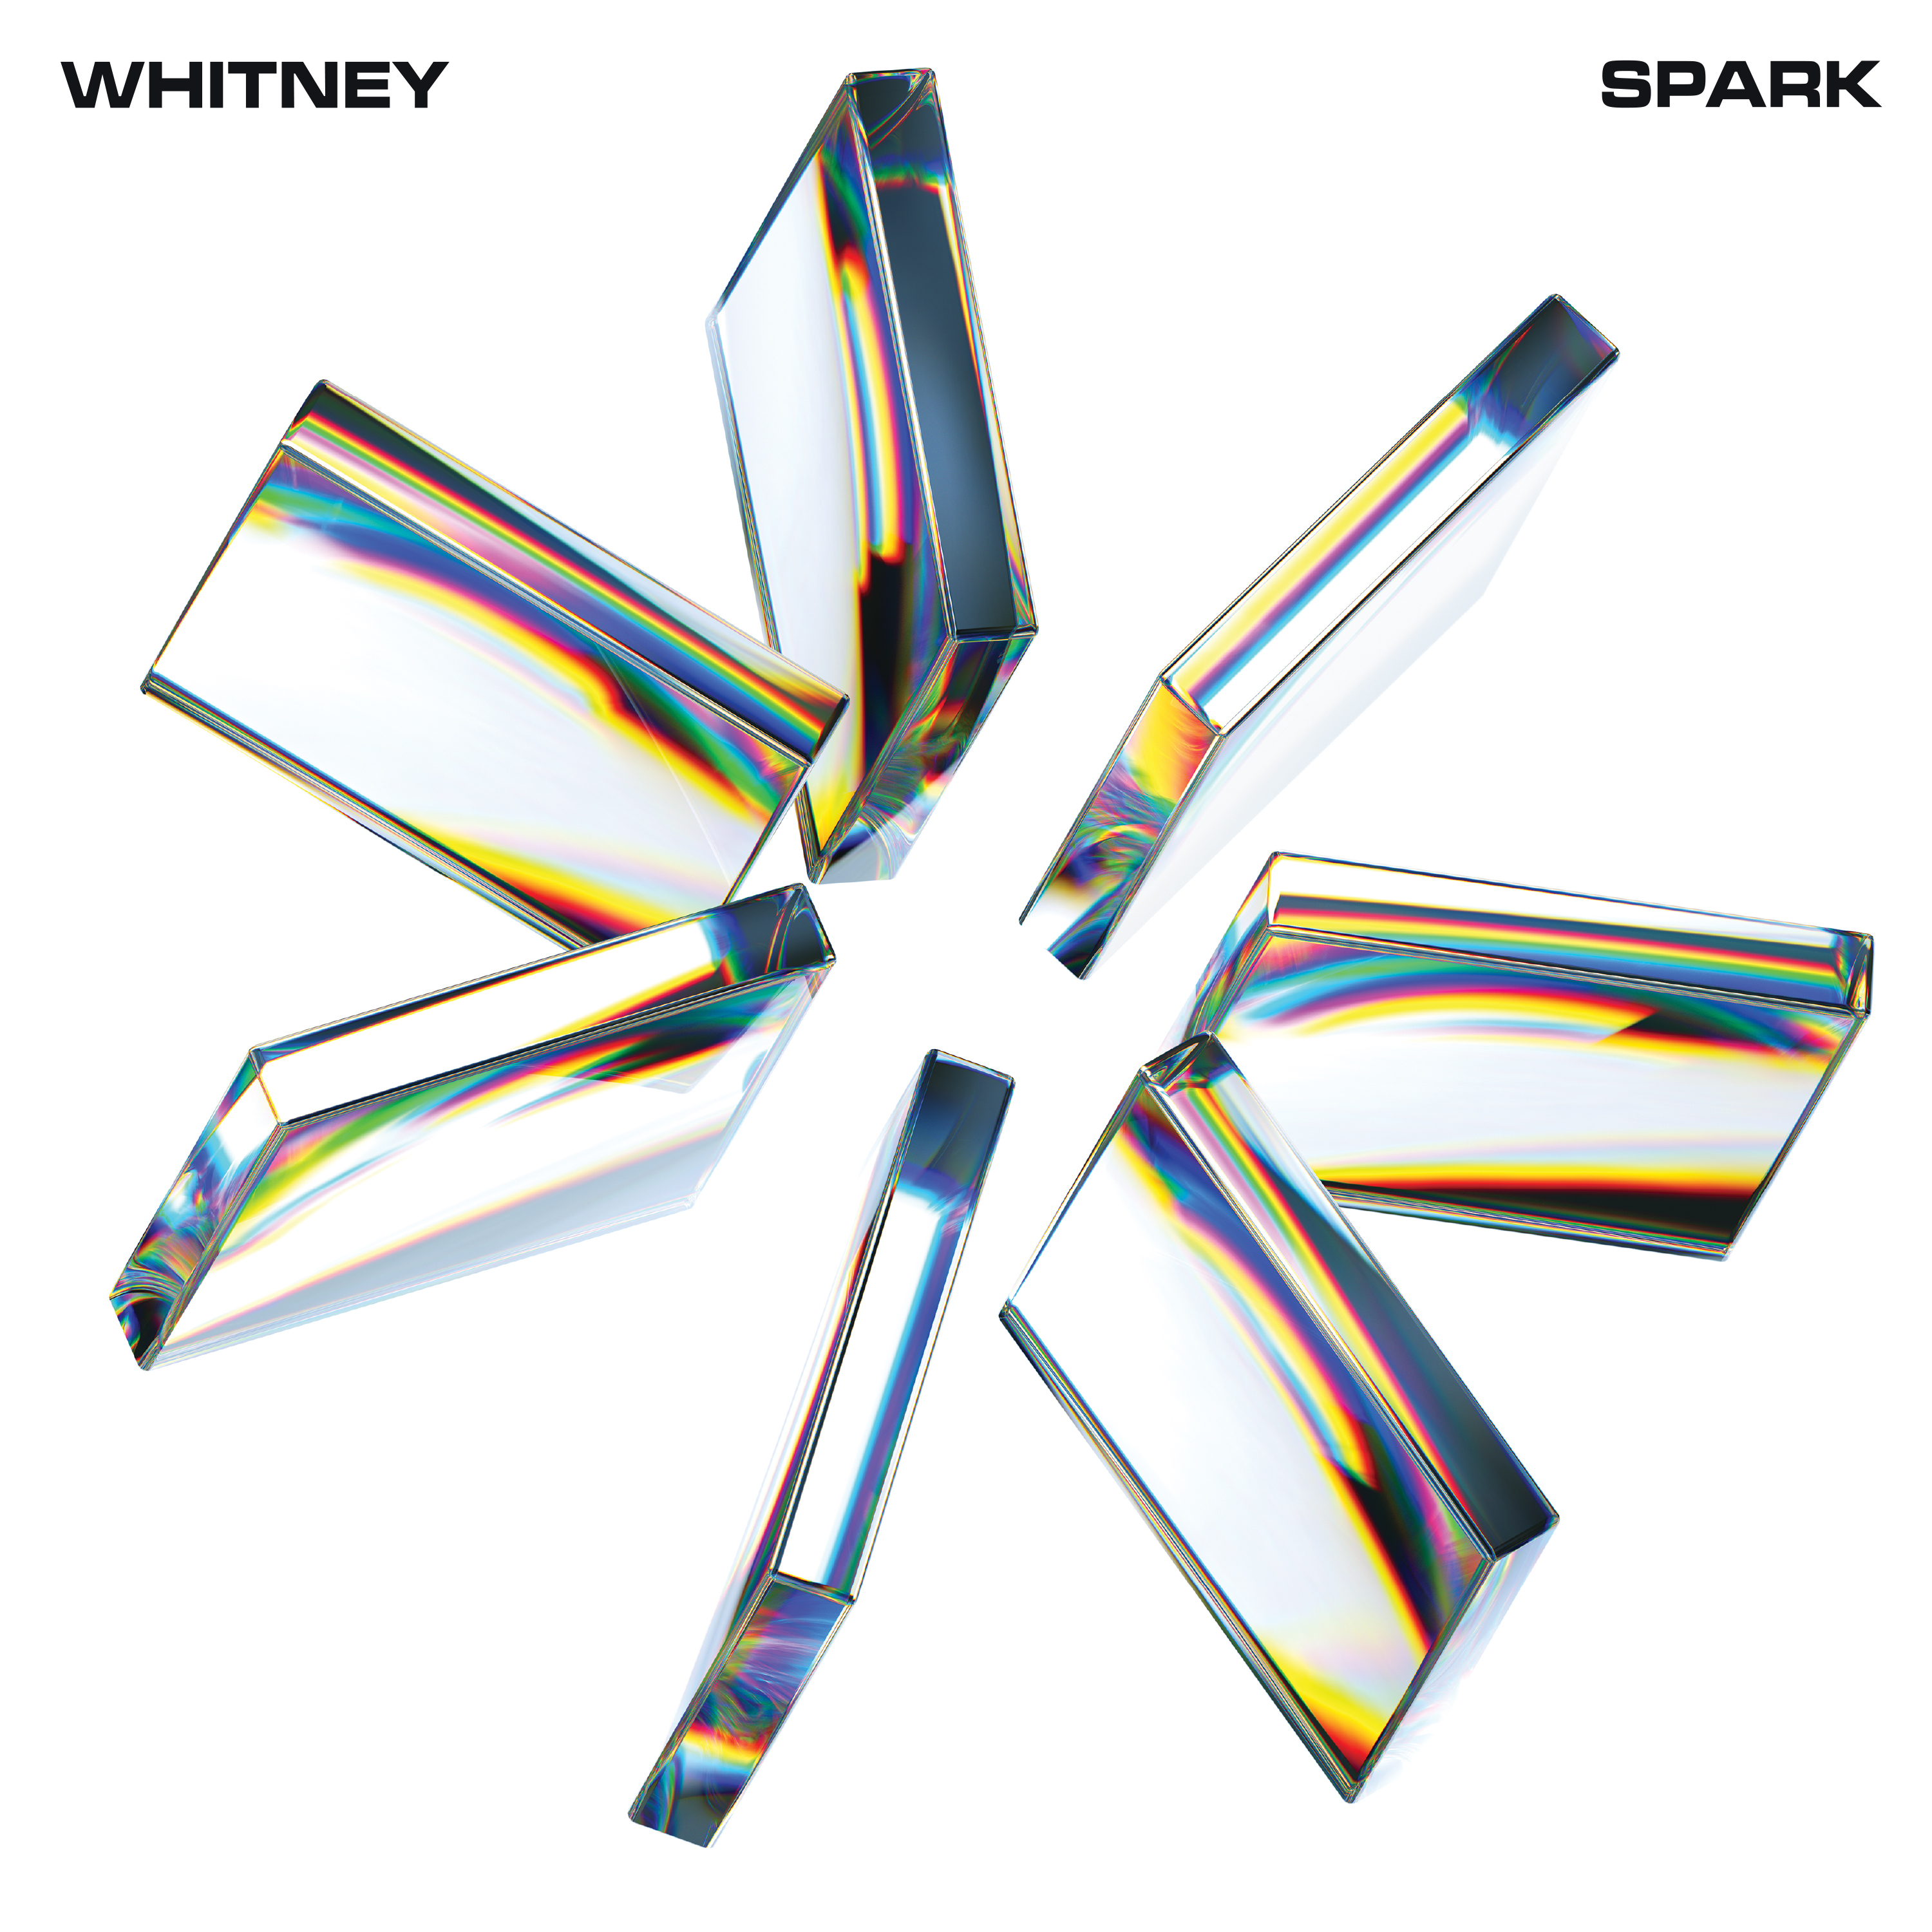 whitney spark album cover